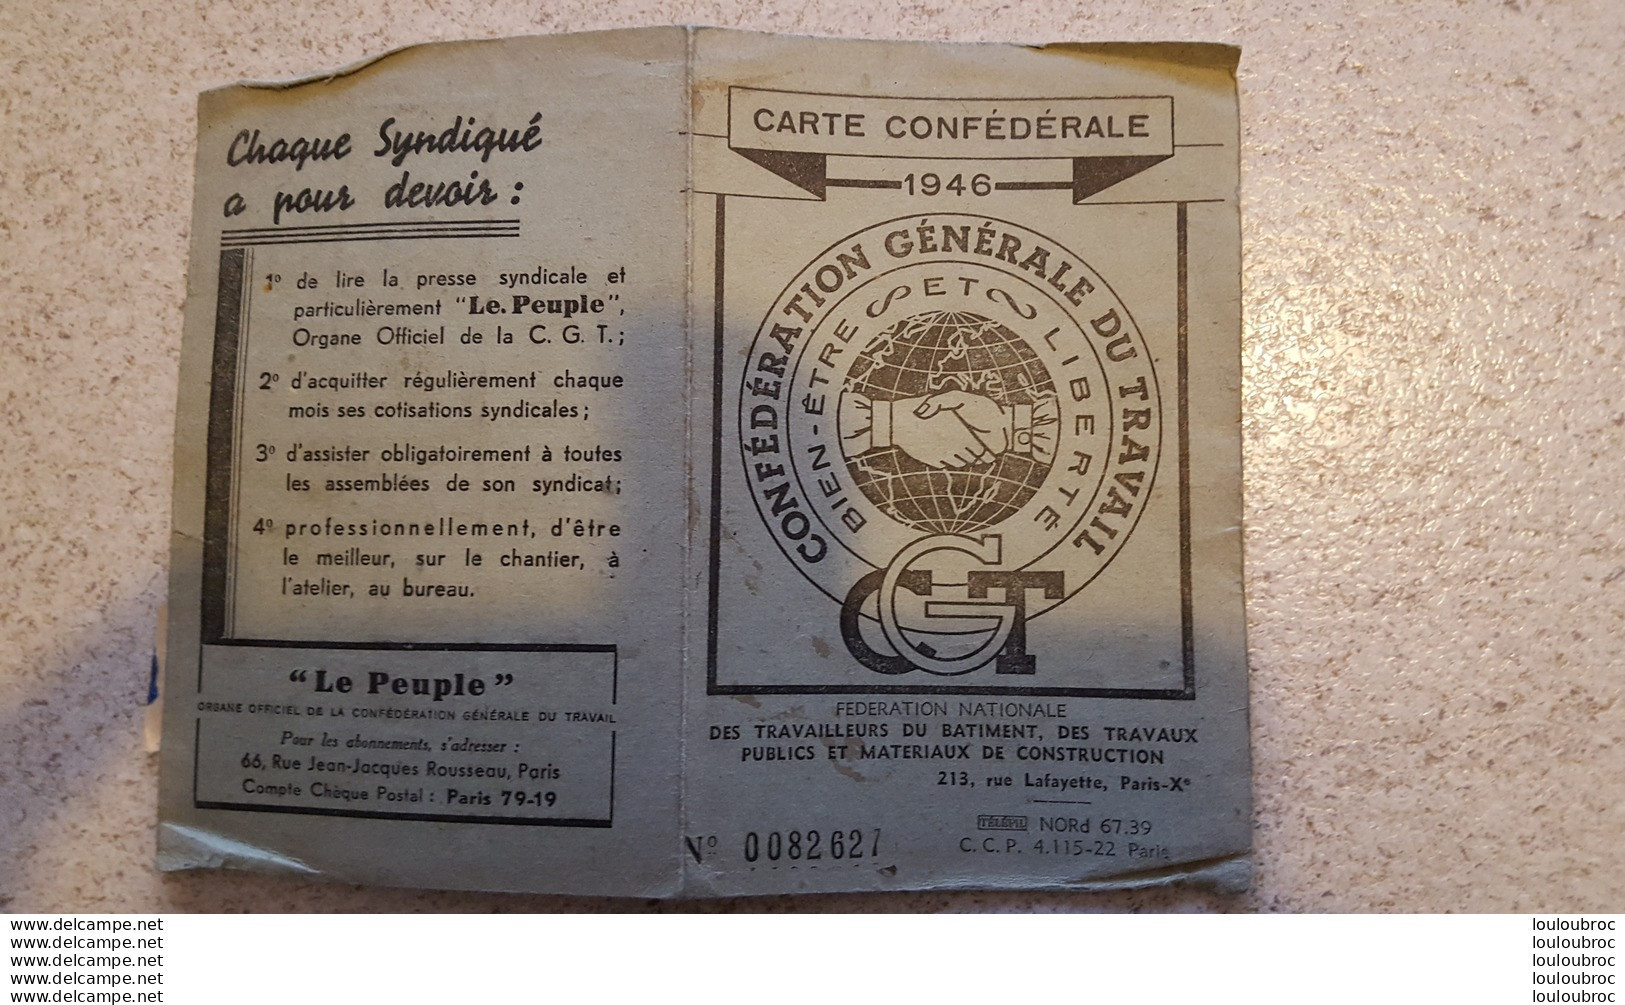 CARTE CONFEDERALE C.G.T. 1946 TRAVAILLEURS DU BATIMENT ET TRAVAUX PUBLICS CGT SECTION LOCALE - Documents Historiques